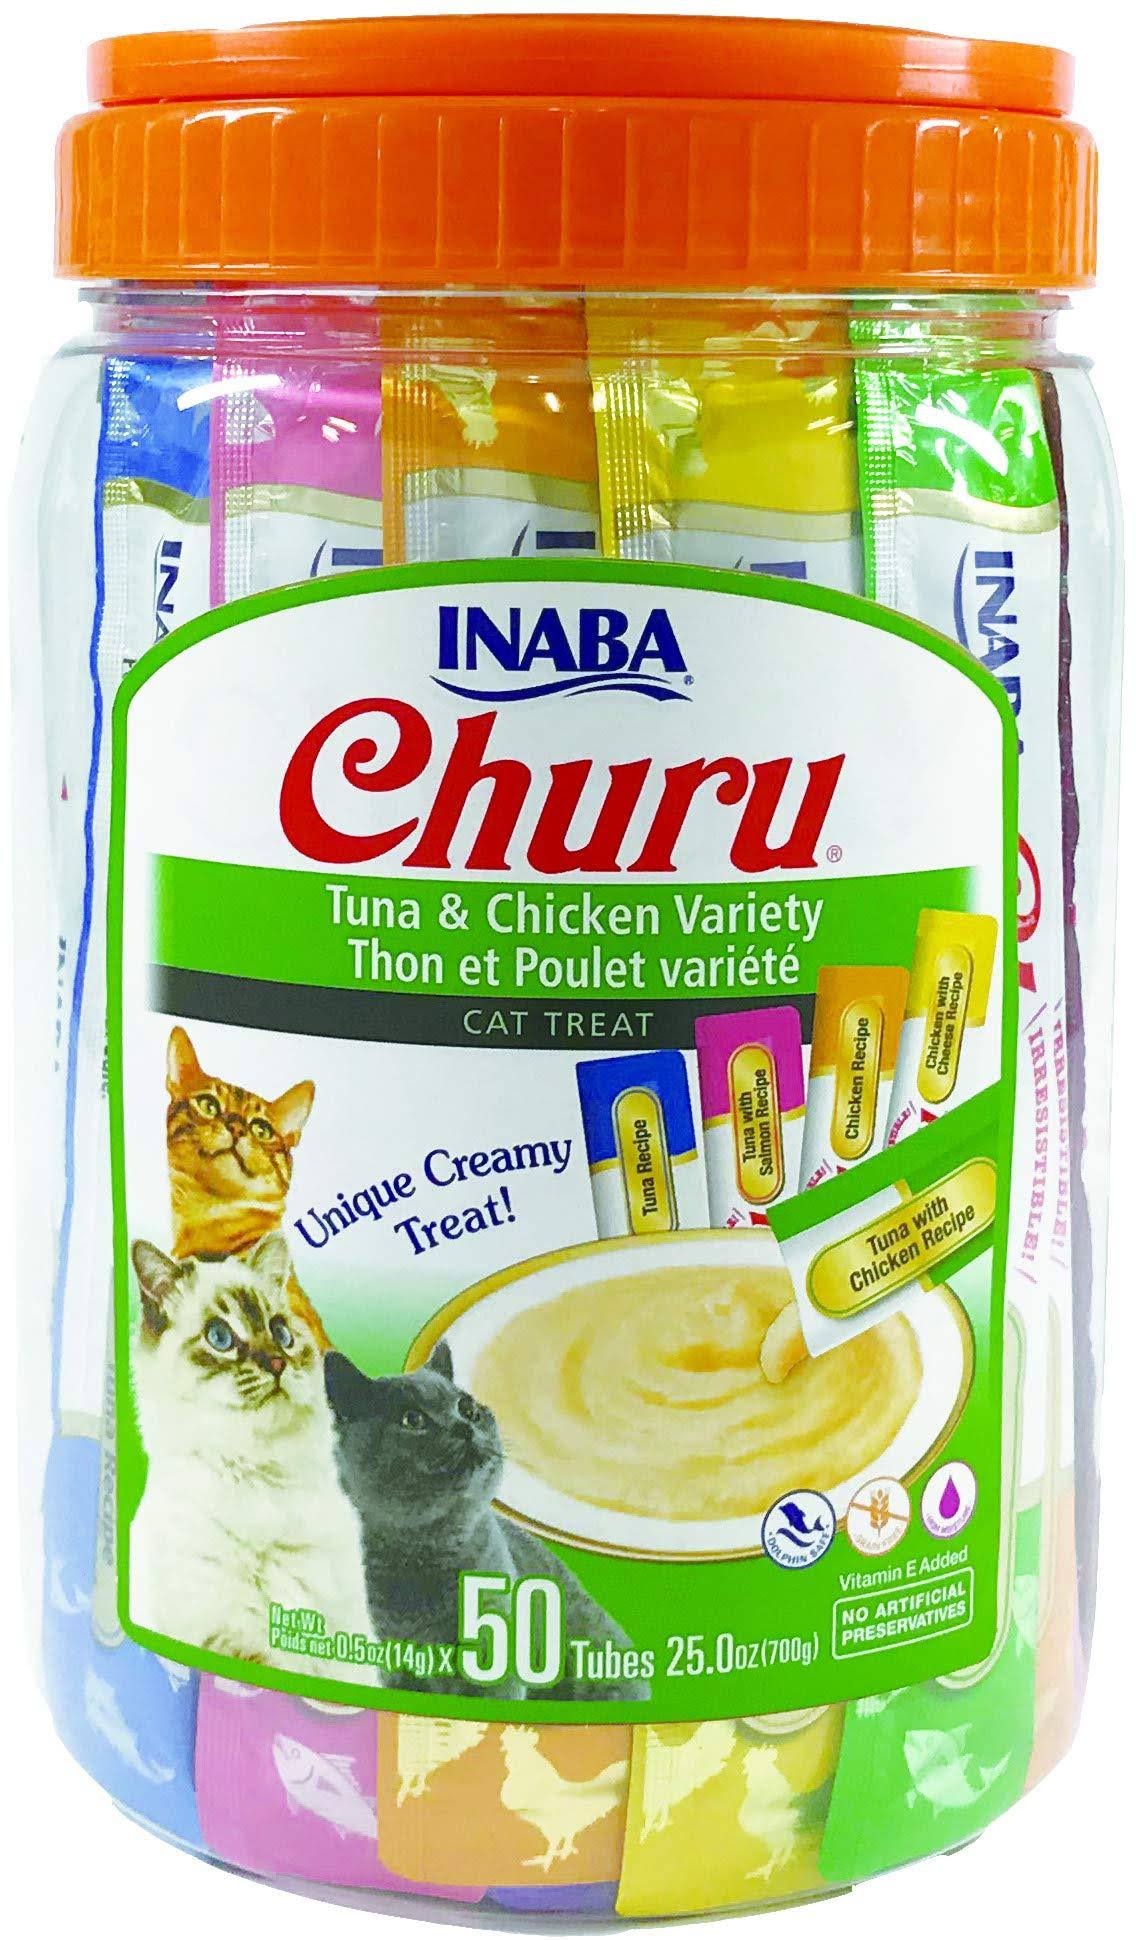 Churu Tuna & Chicken Puree Cat Treat Variety Pack, 50-Ct.